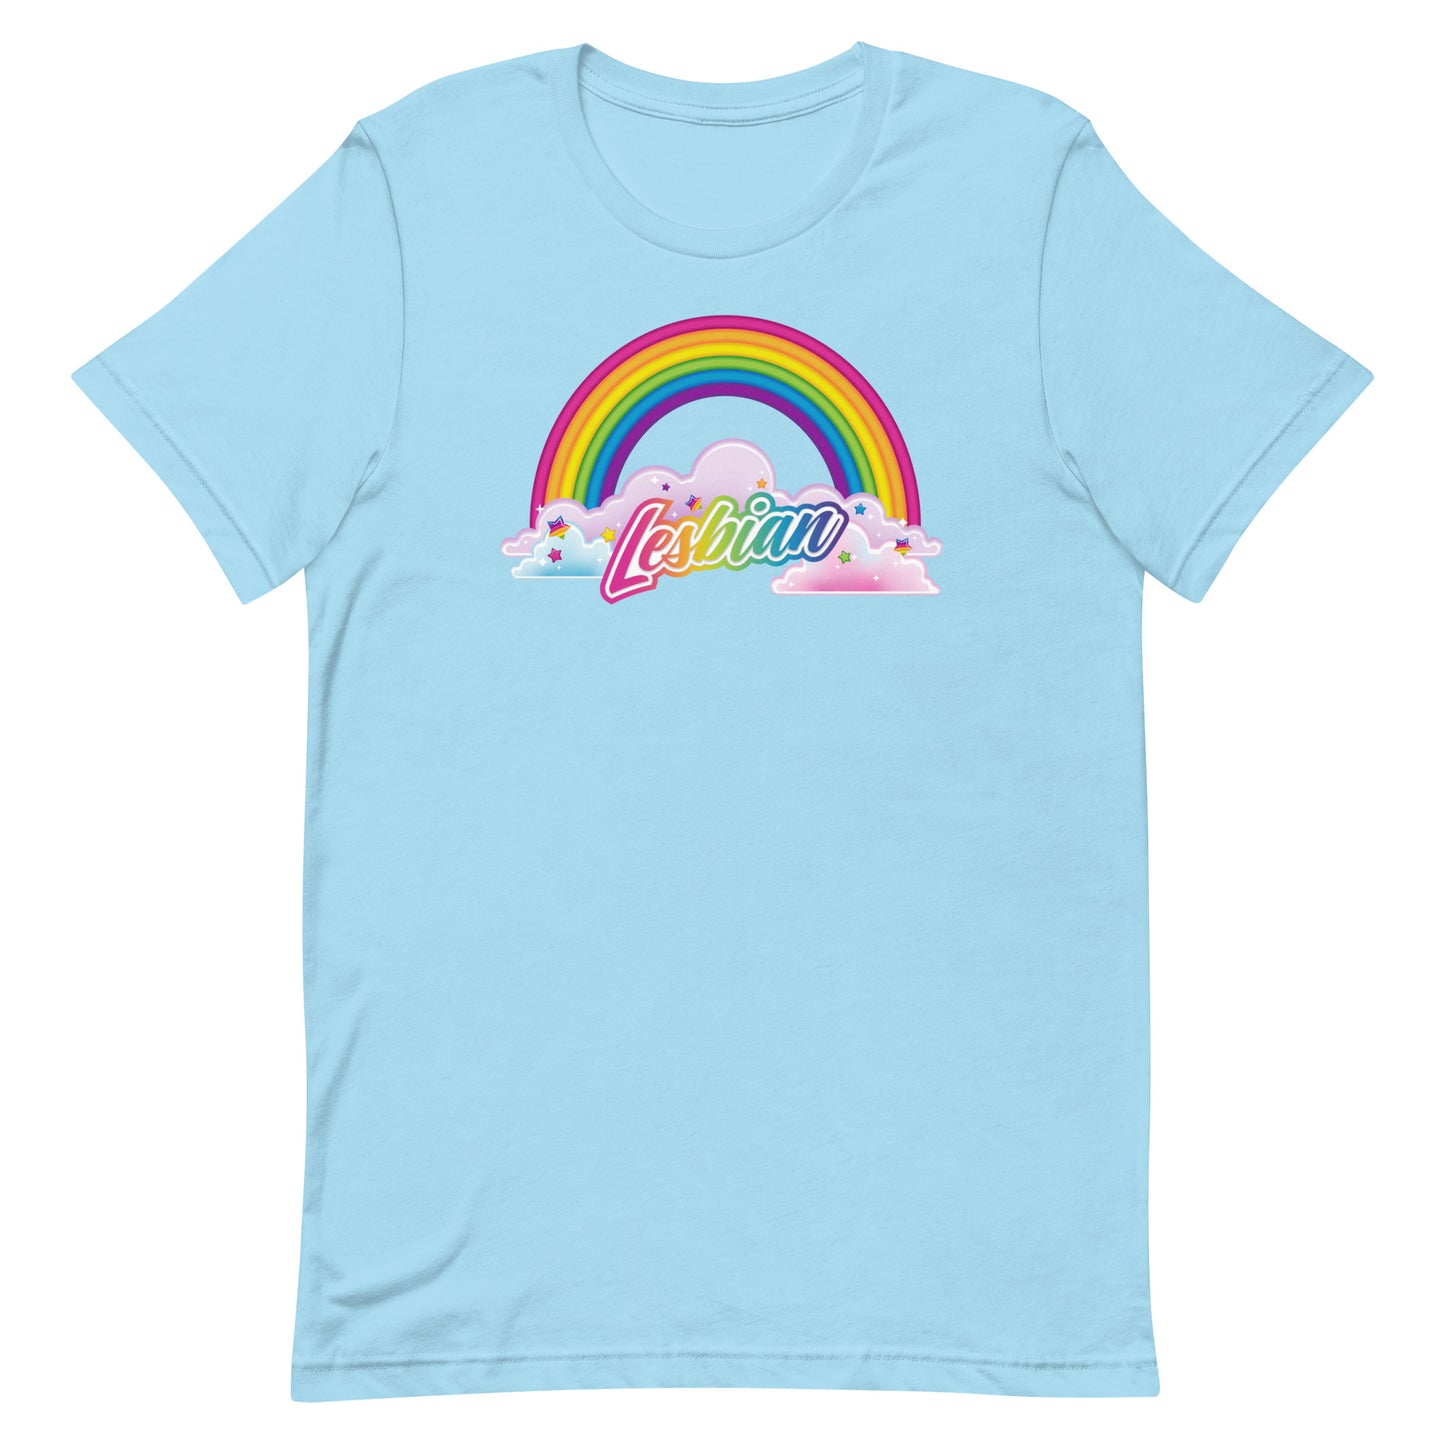 LGBTQIA Frank T-Shirt: Lesbian